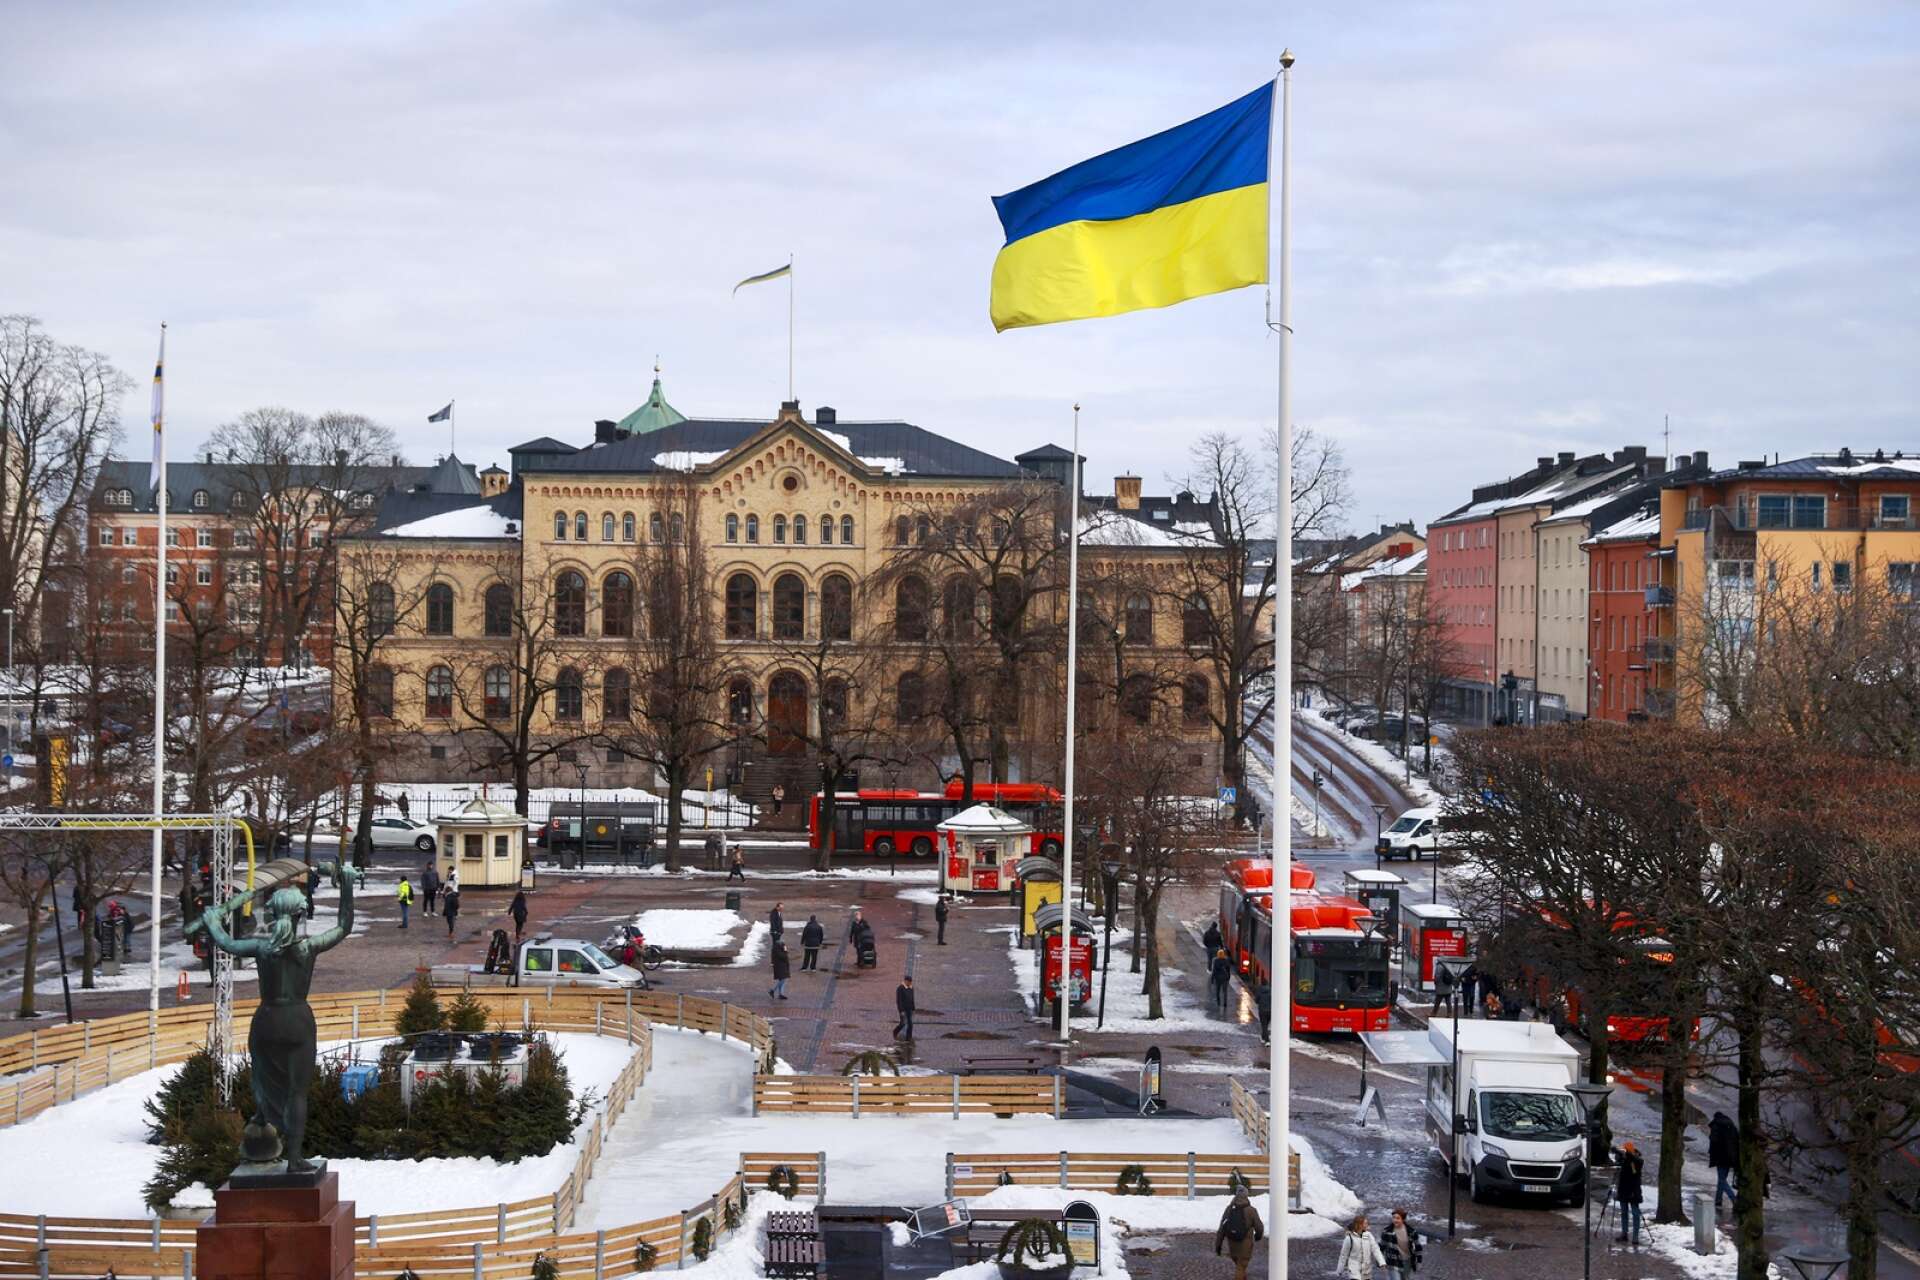 Karlstads kommun visade sitt stöd för Ukraina genom att hissa ukrainska flaggan på Stora Torget i Karlstad.